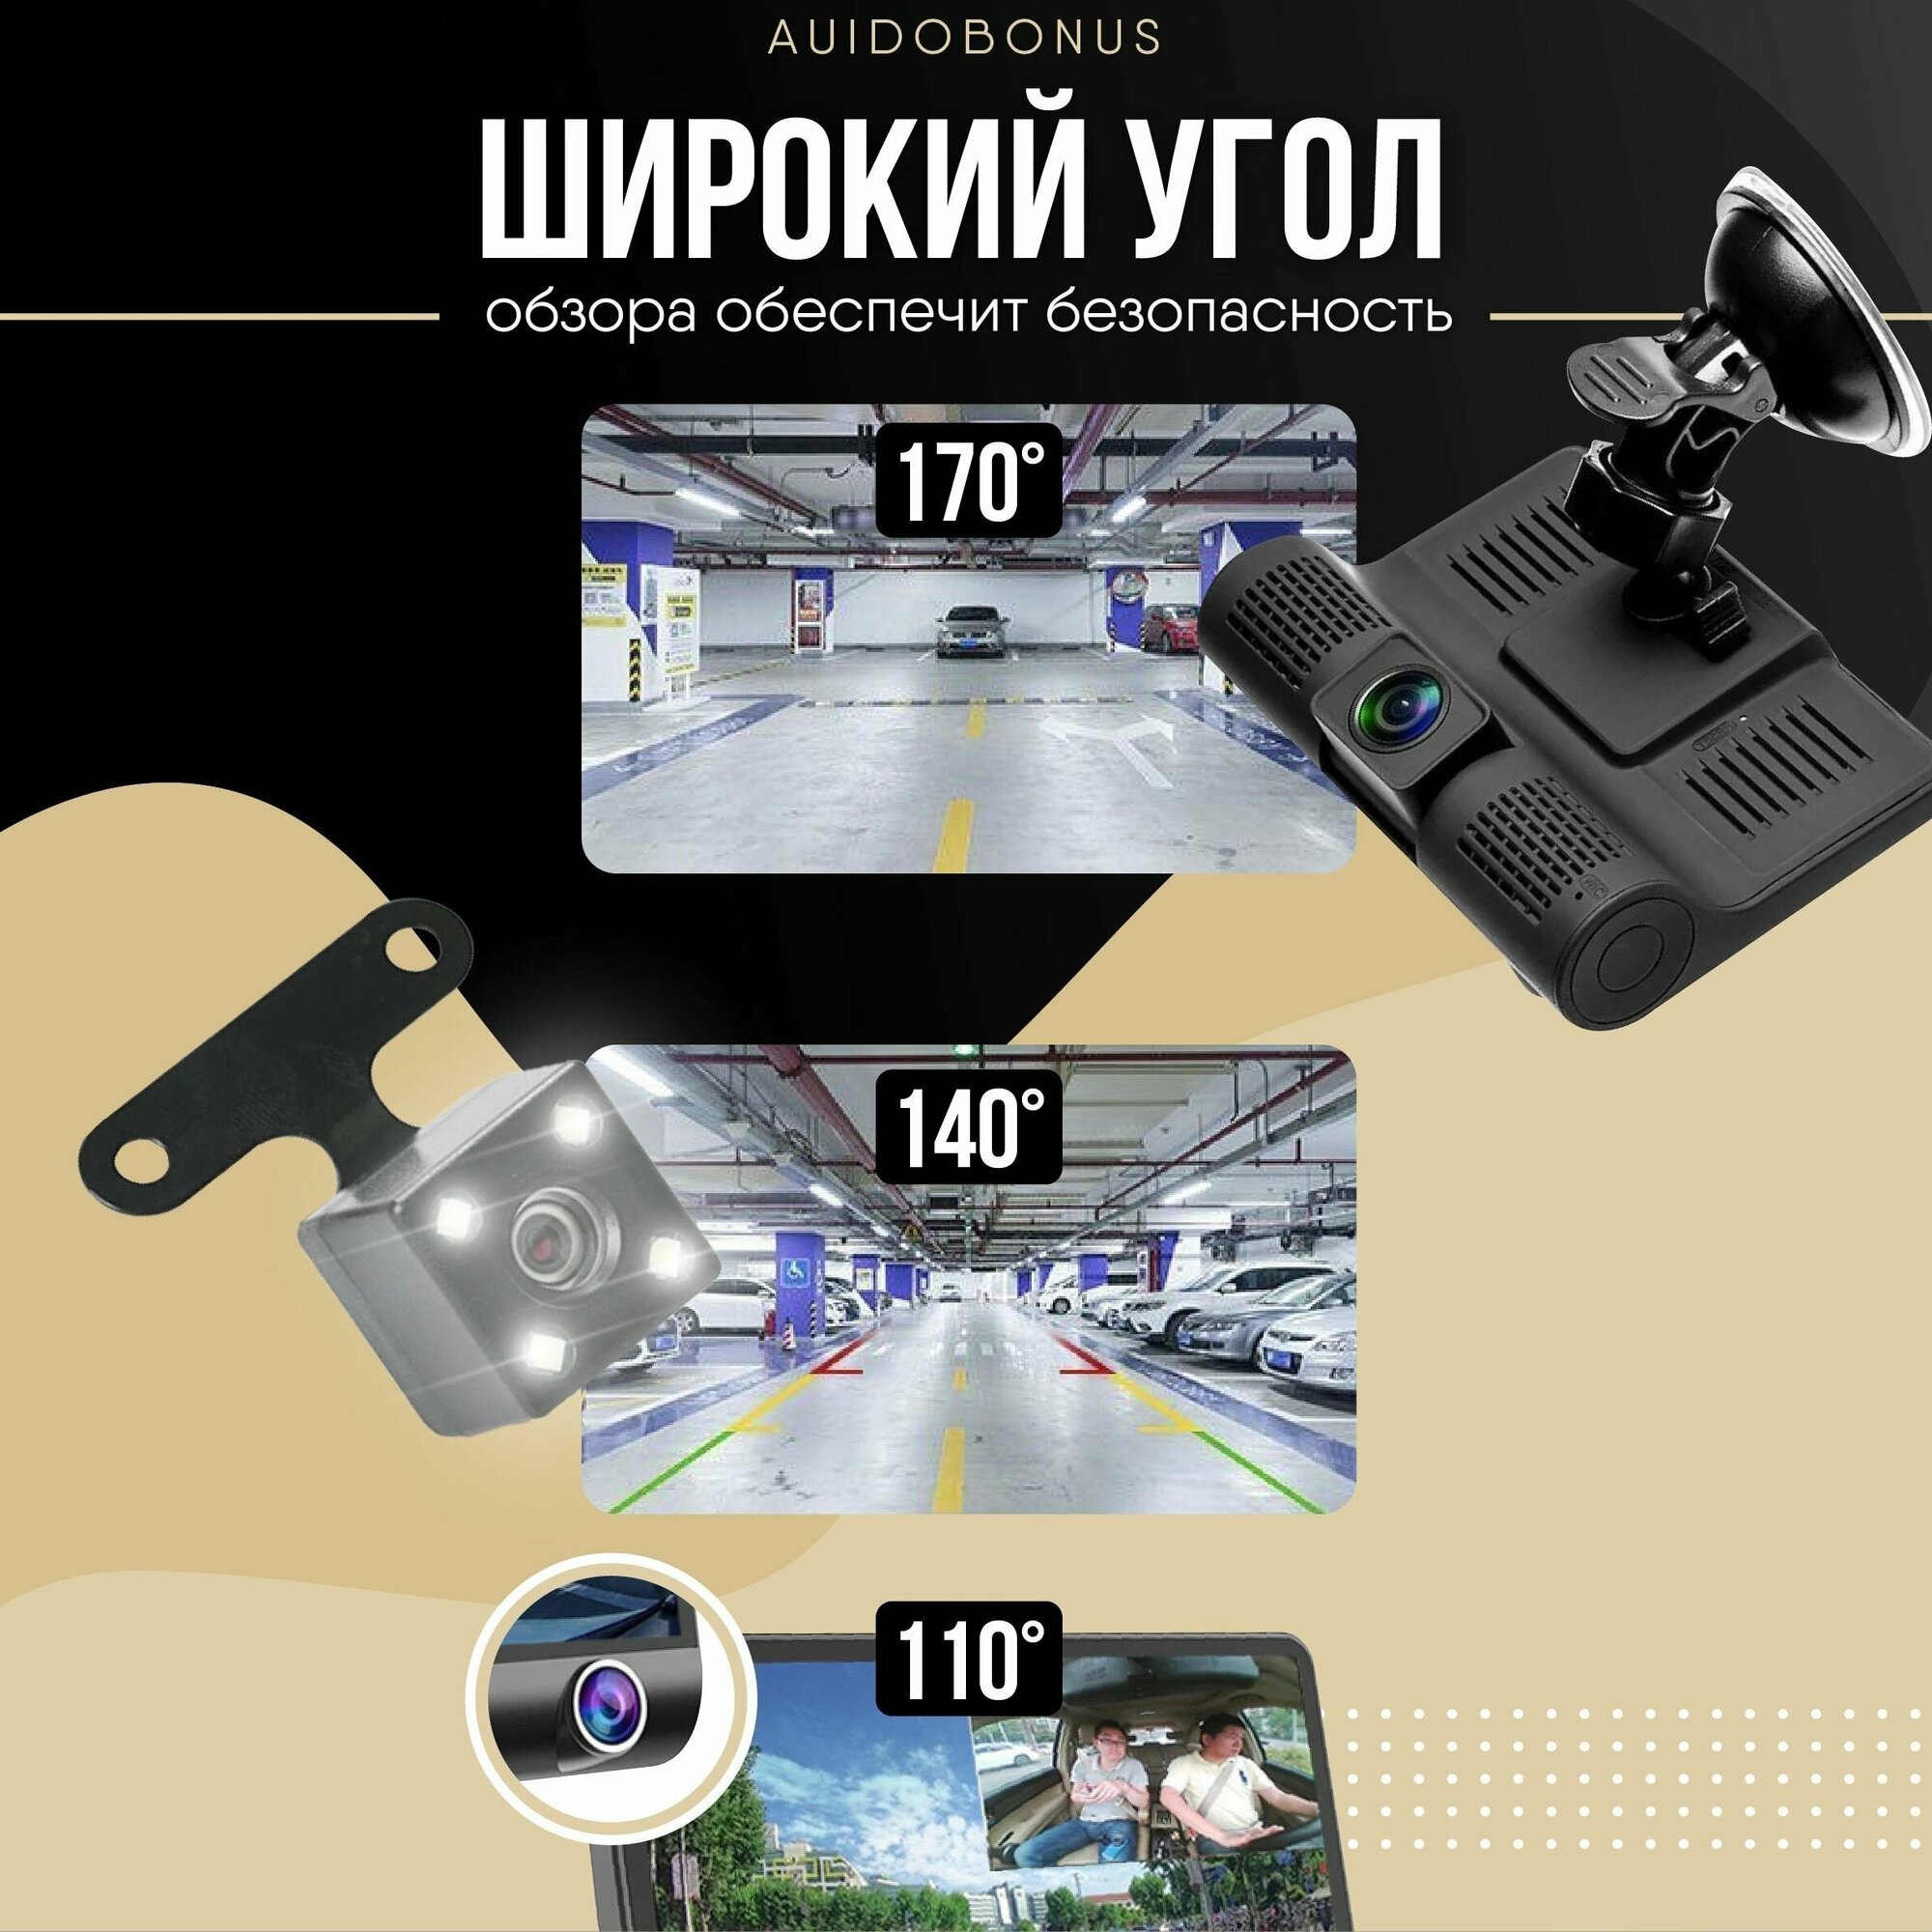 Видеорегистратор для автомобиля 3 в 1/Регистратор с тремя камерами/Комплект для видеофиксации в авто: Камера заднего вида